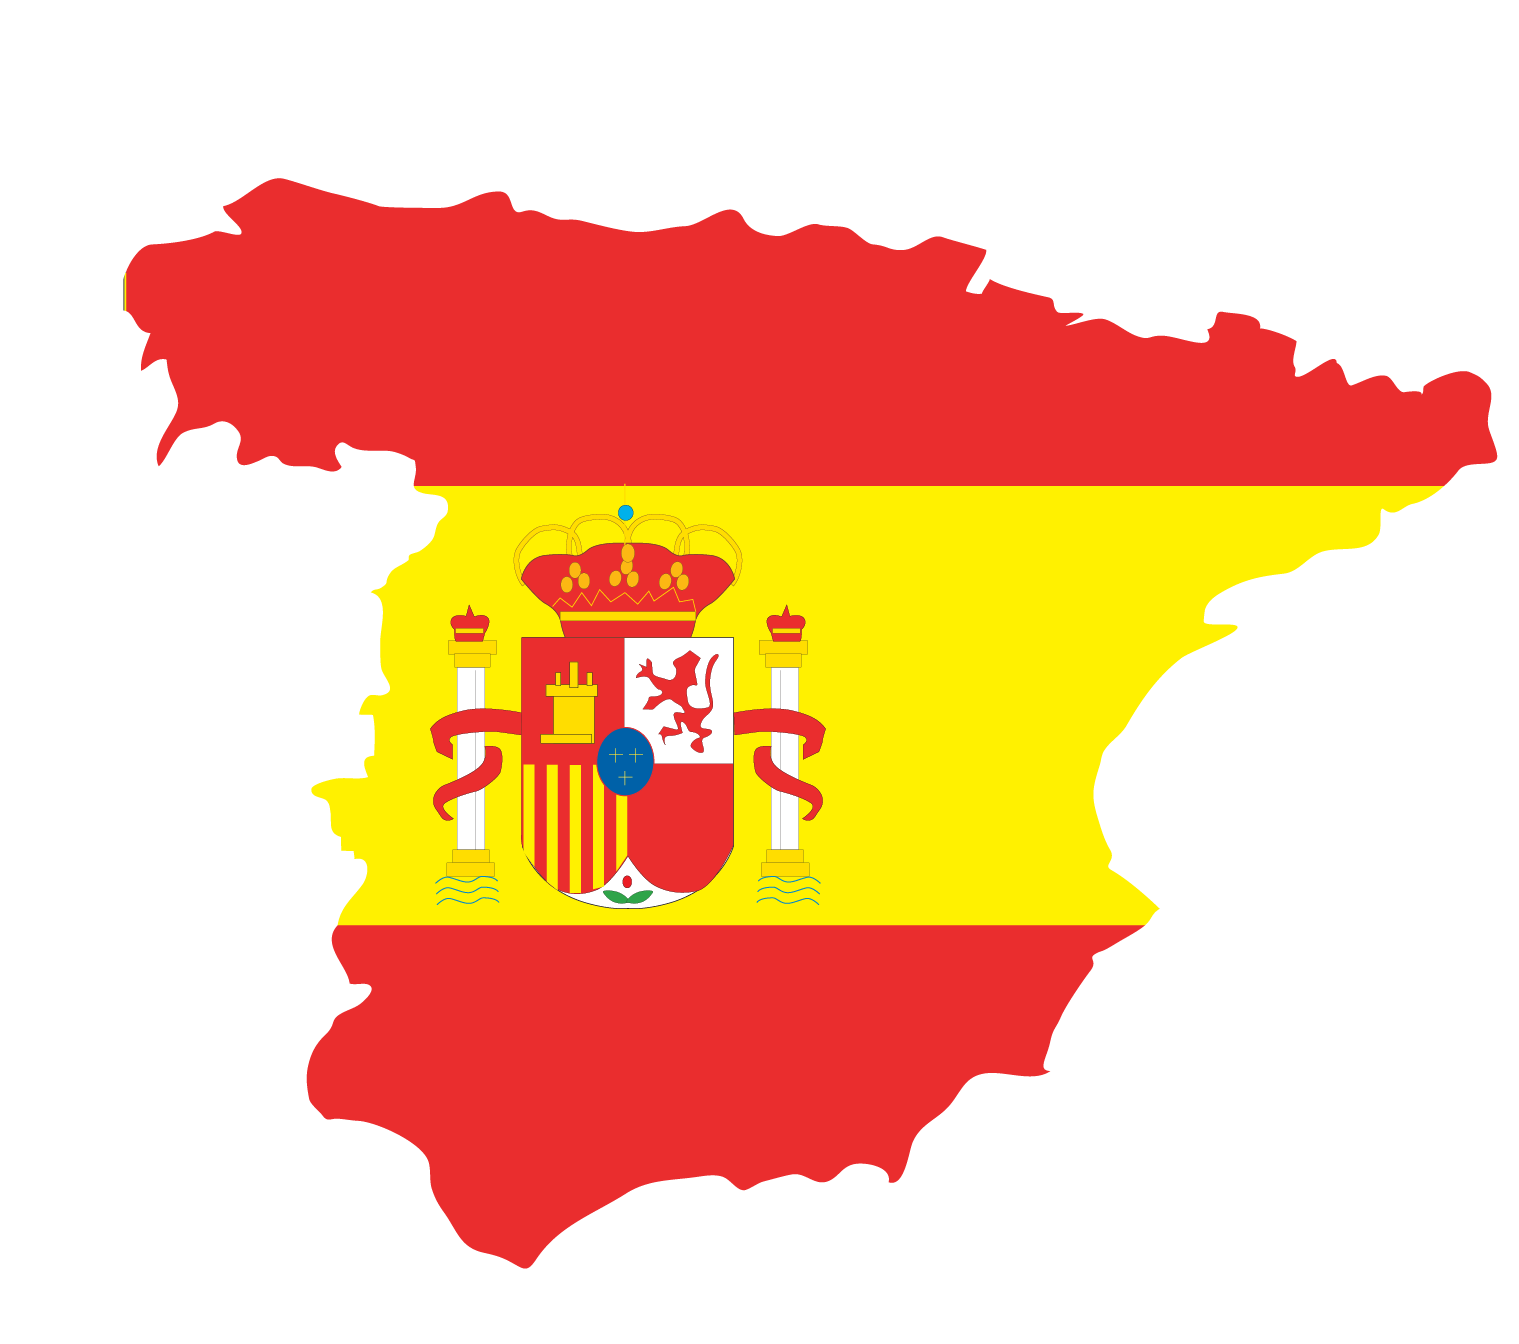 Mapa da Espanha